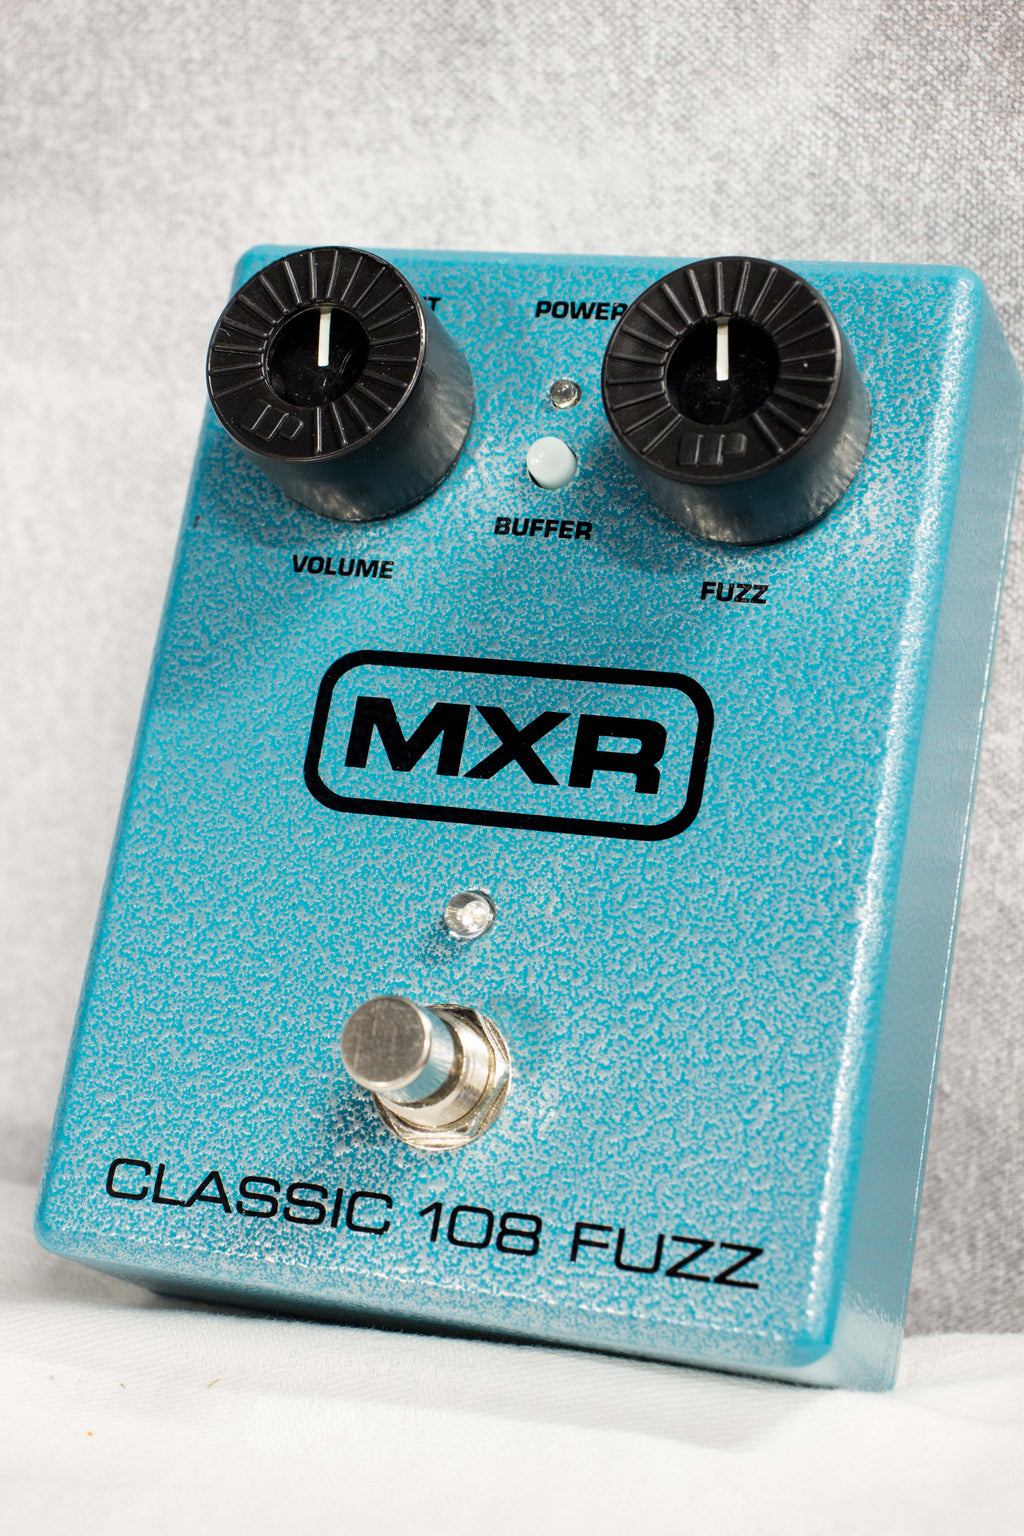 MXR M173 Classic 108 Fuzz Pedal